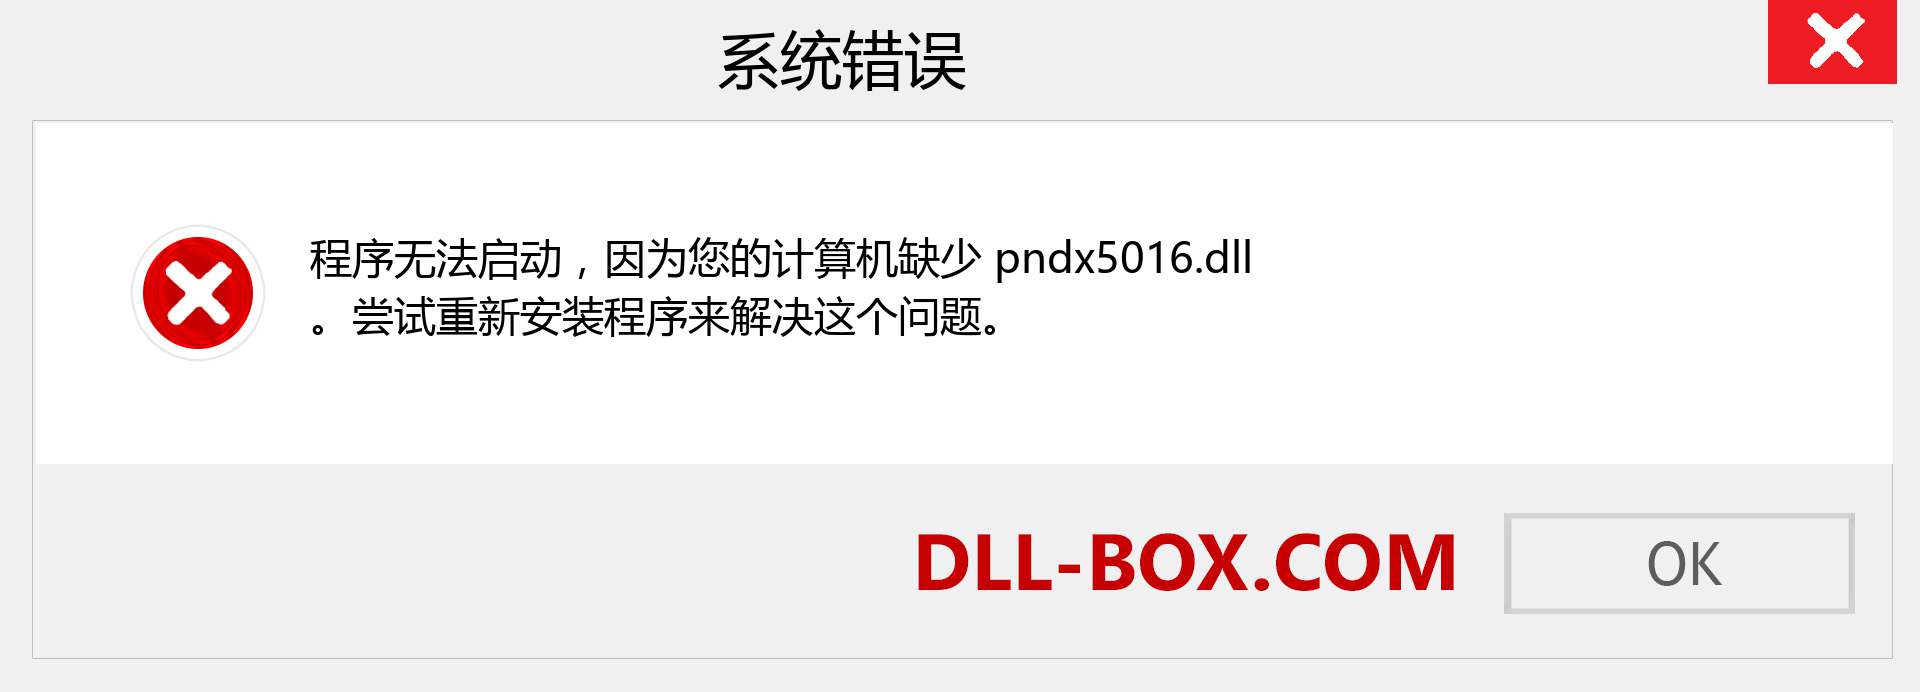 pndx5016.dll 文件丢失？。 适用于 Windows 7、8、10 的下载 - 修复 Windows、照片、图像上的 pndx5016 dll 丢失错误